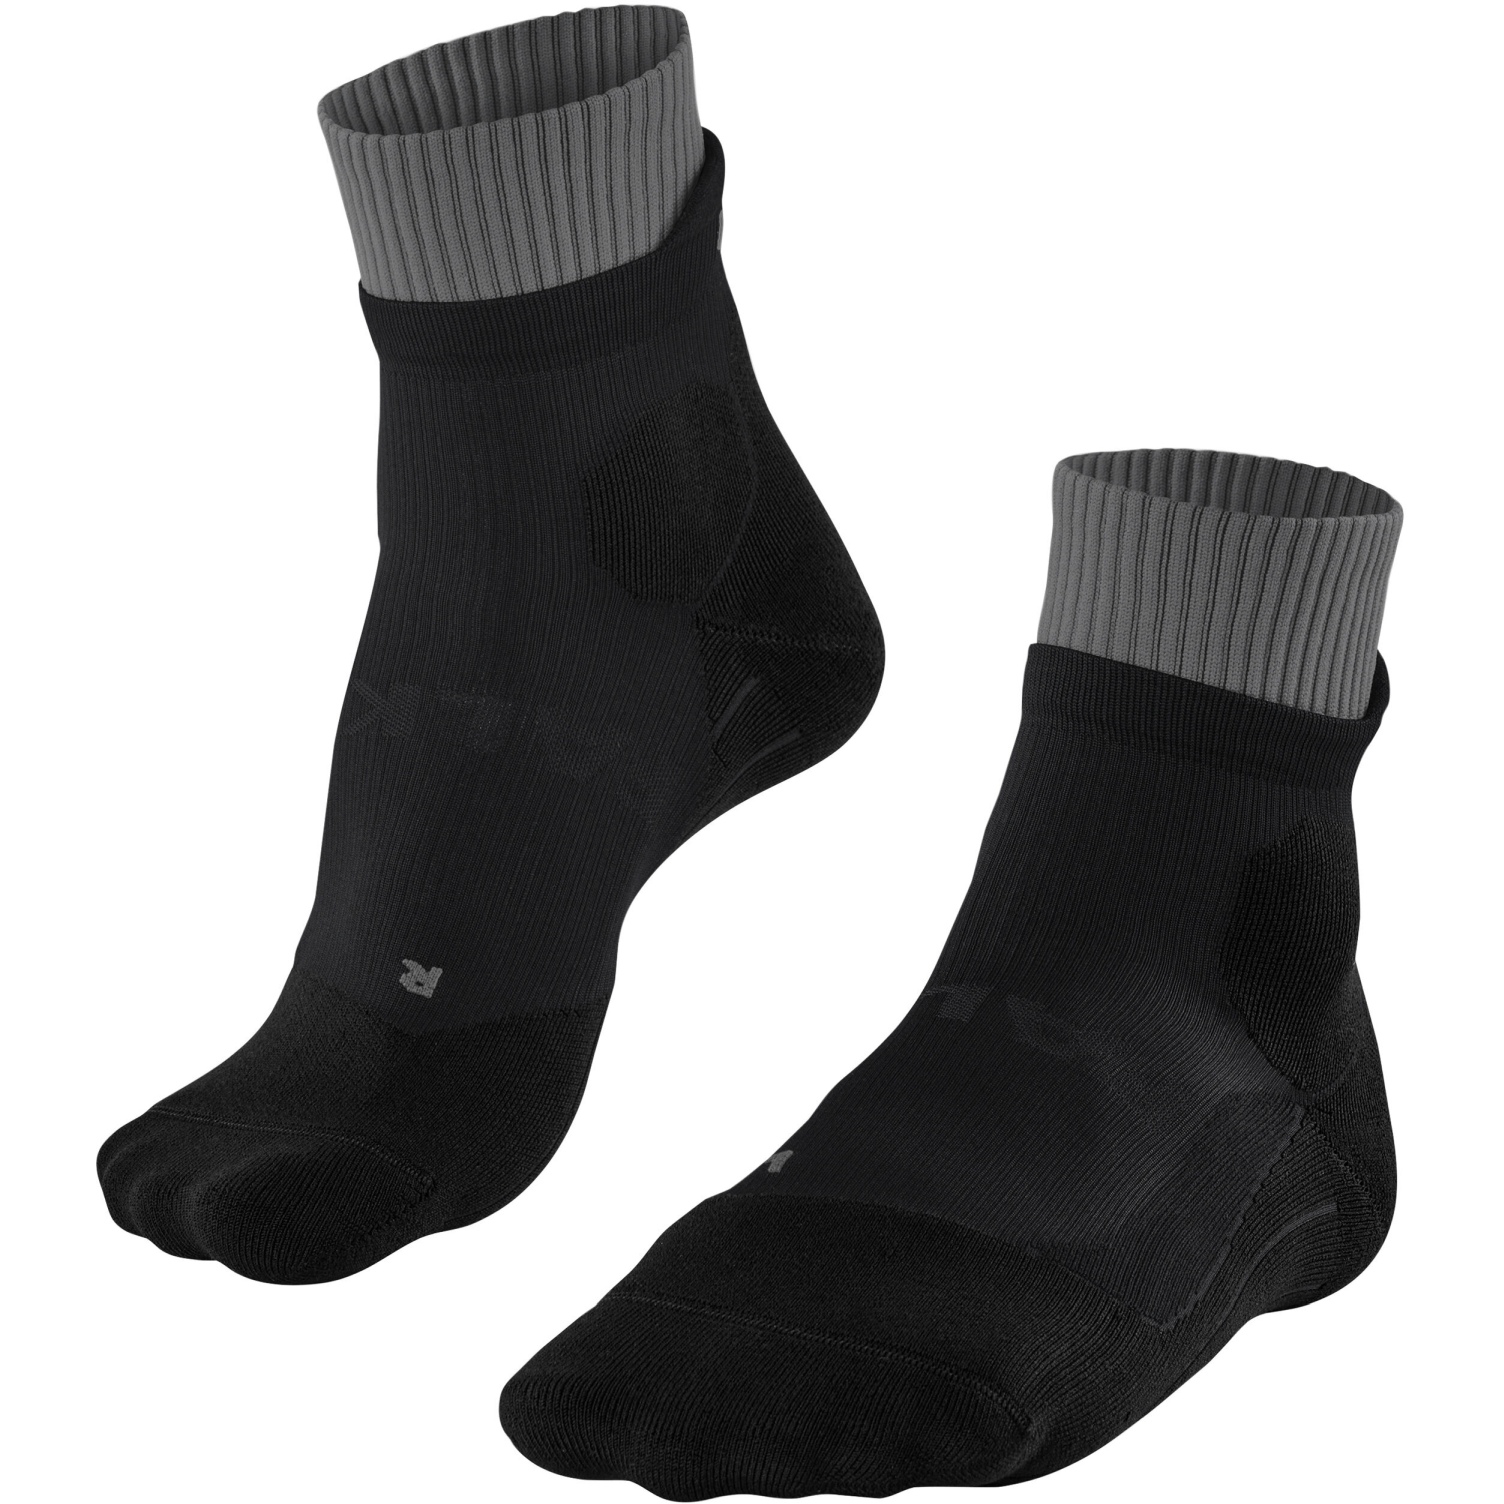 Produktbild von Falke RU Trailrunning Socken Damen - schwarz 3003